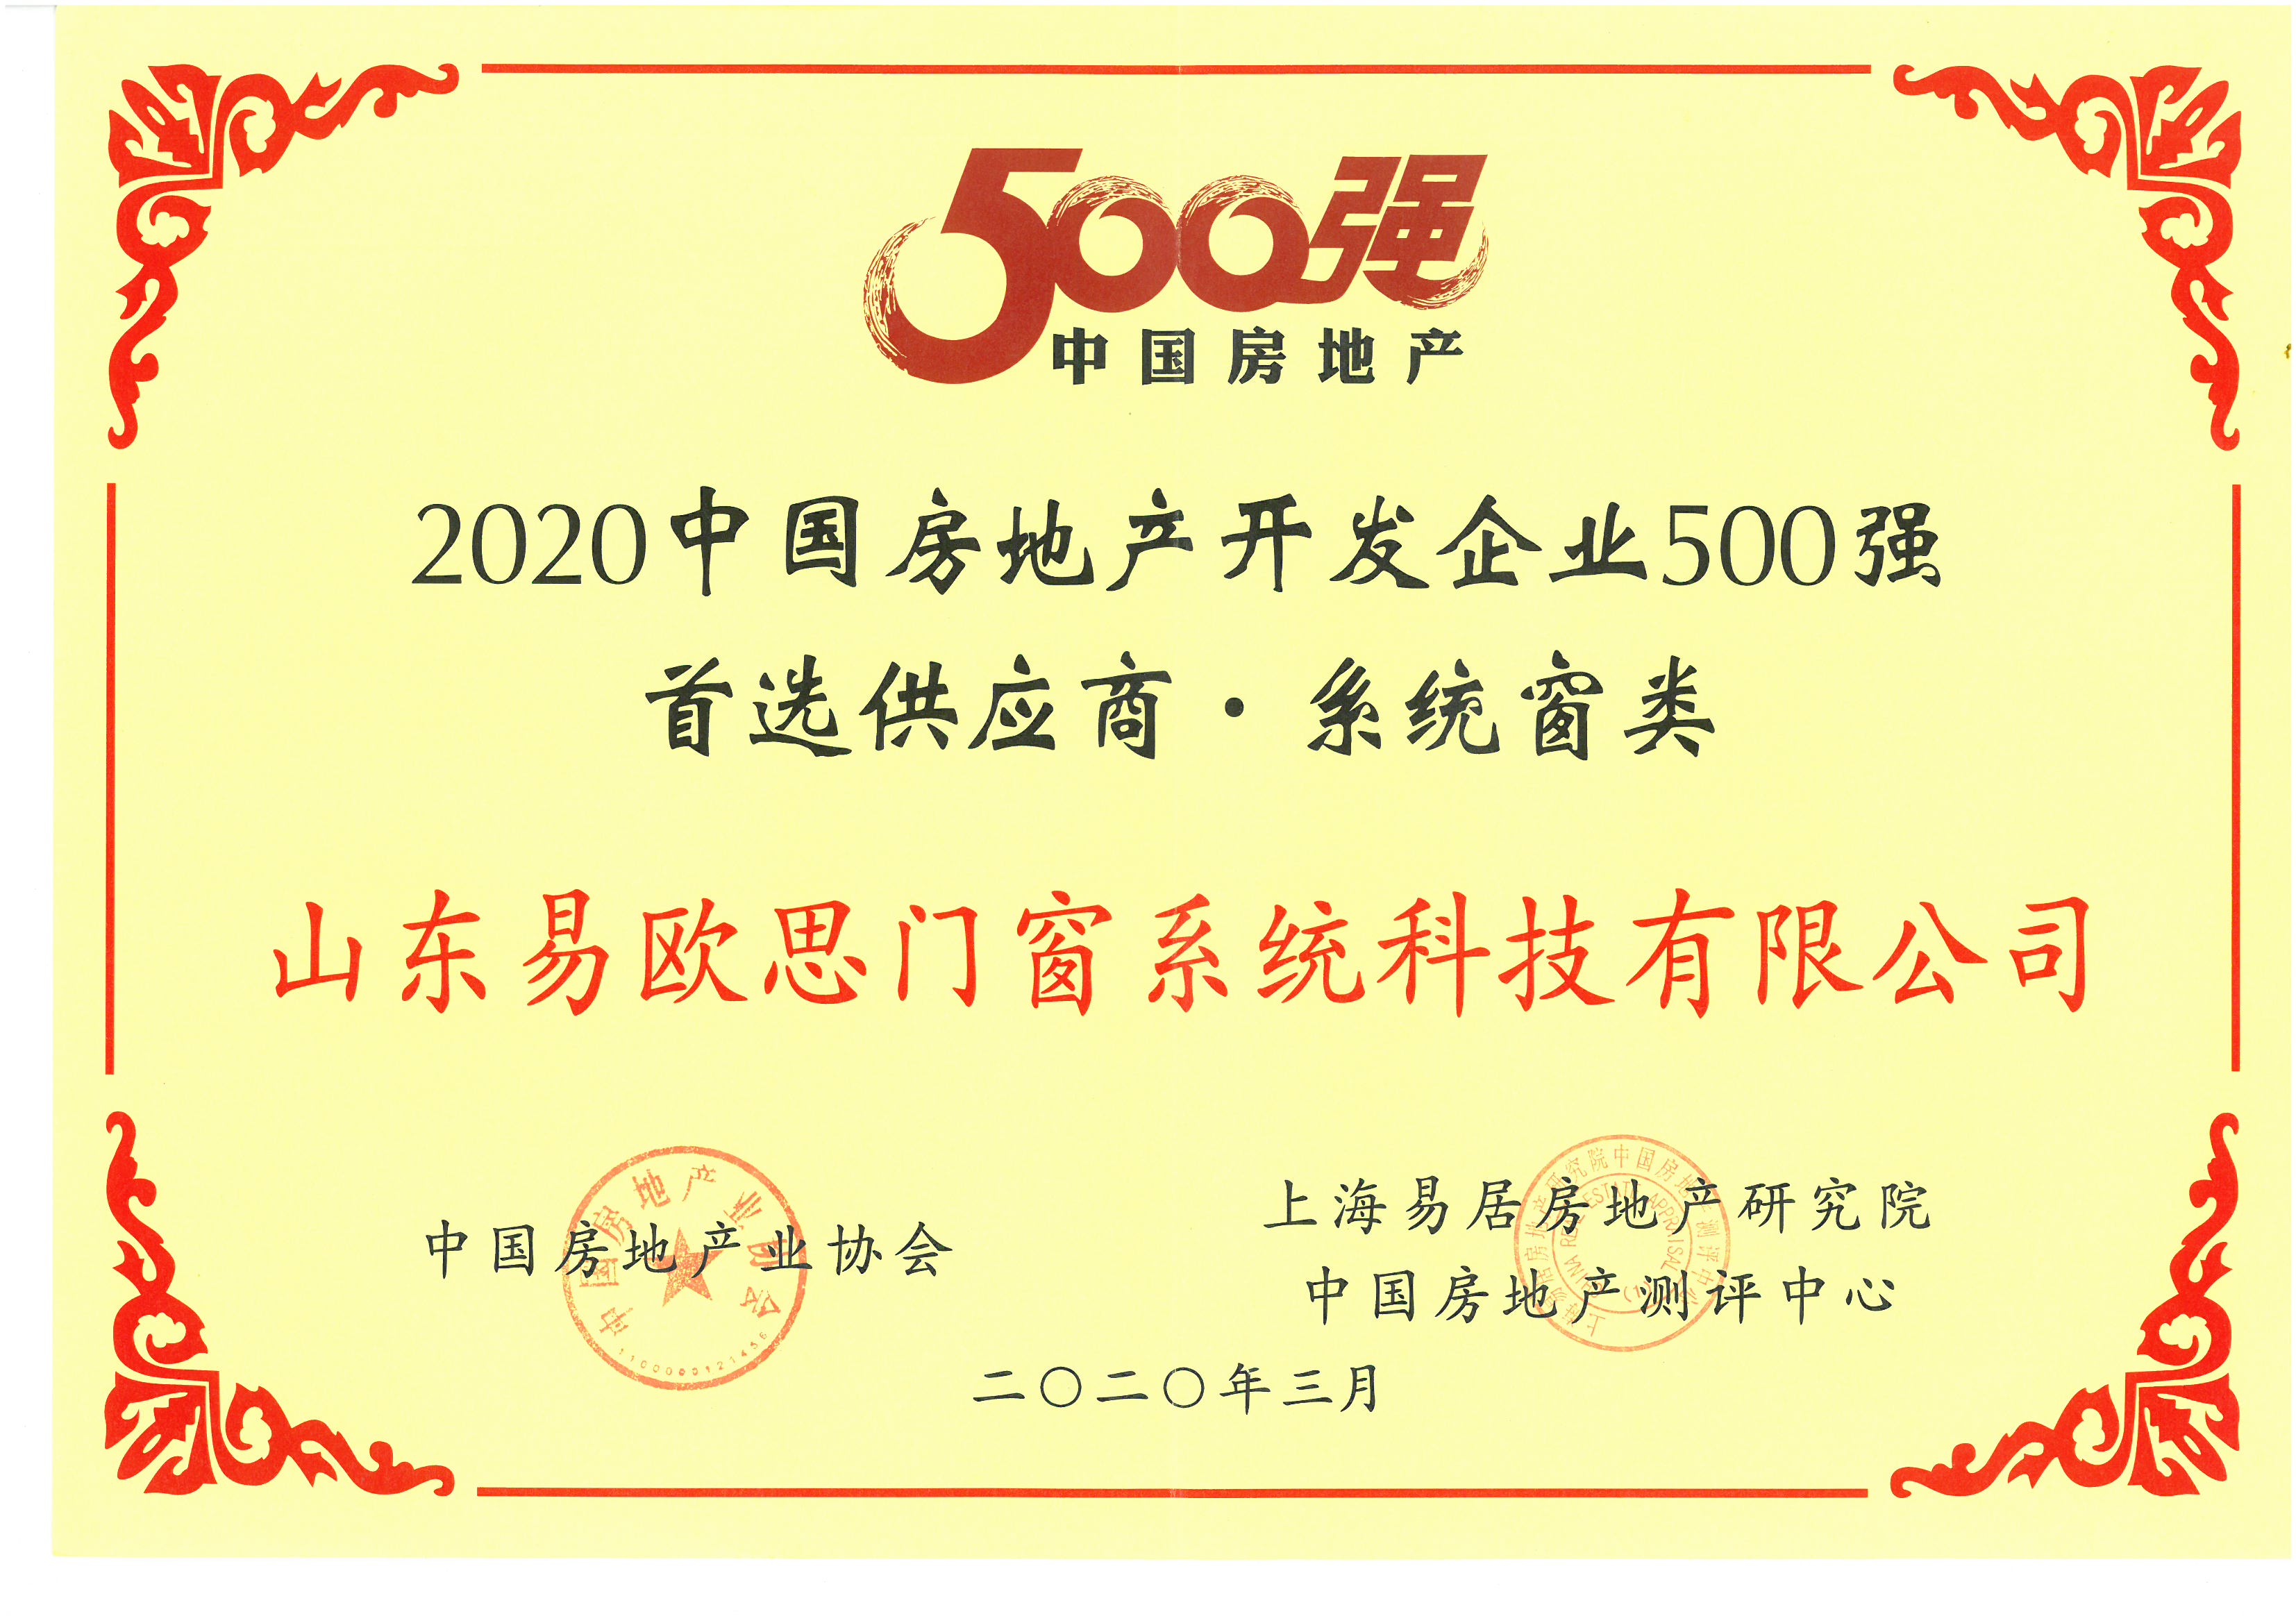 2020中国房地产开发企业500强首选供应商